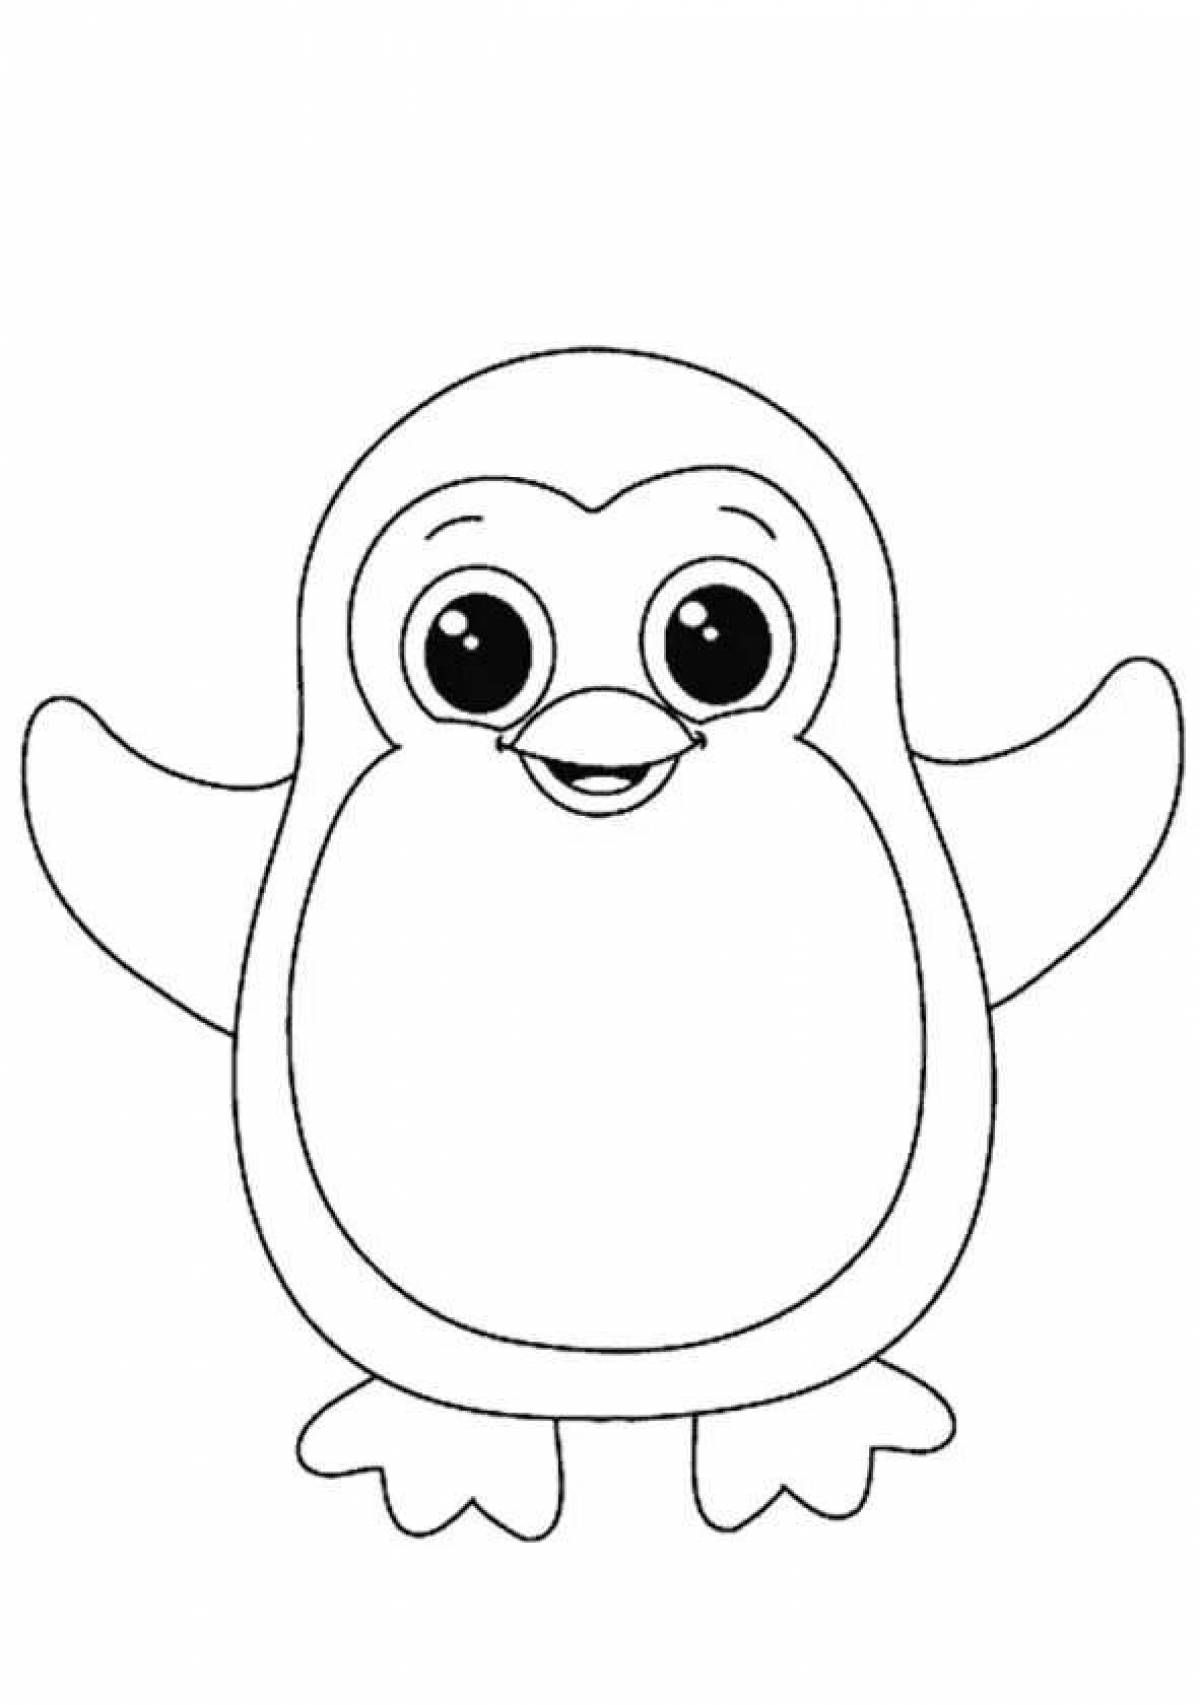 Увлекательный рисунок пингвина